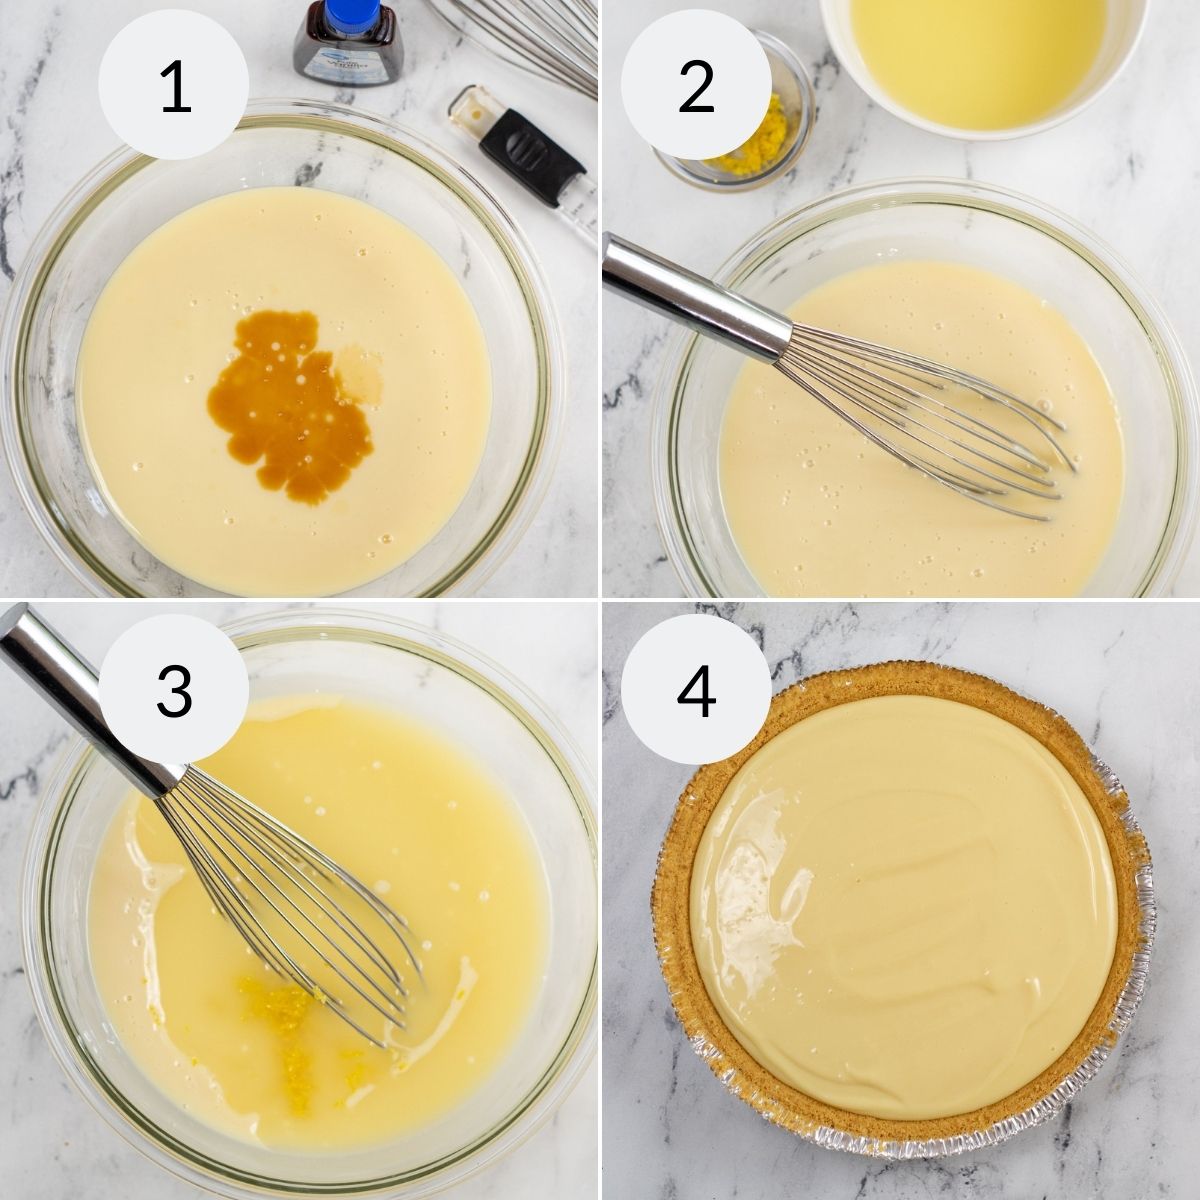 Making the lemon fillig for the pie.